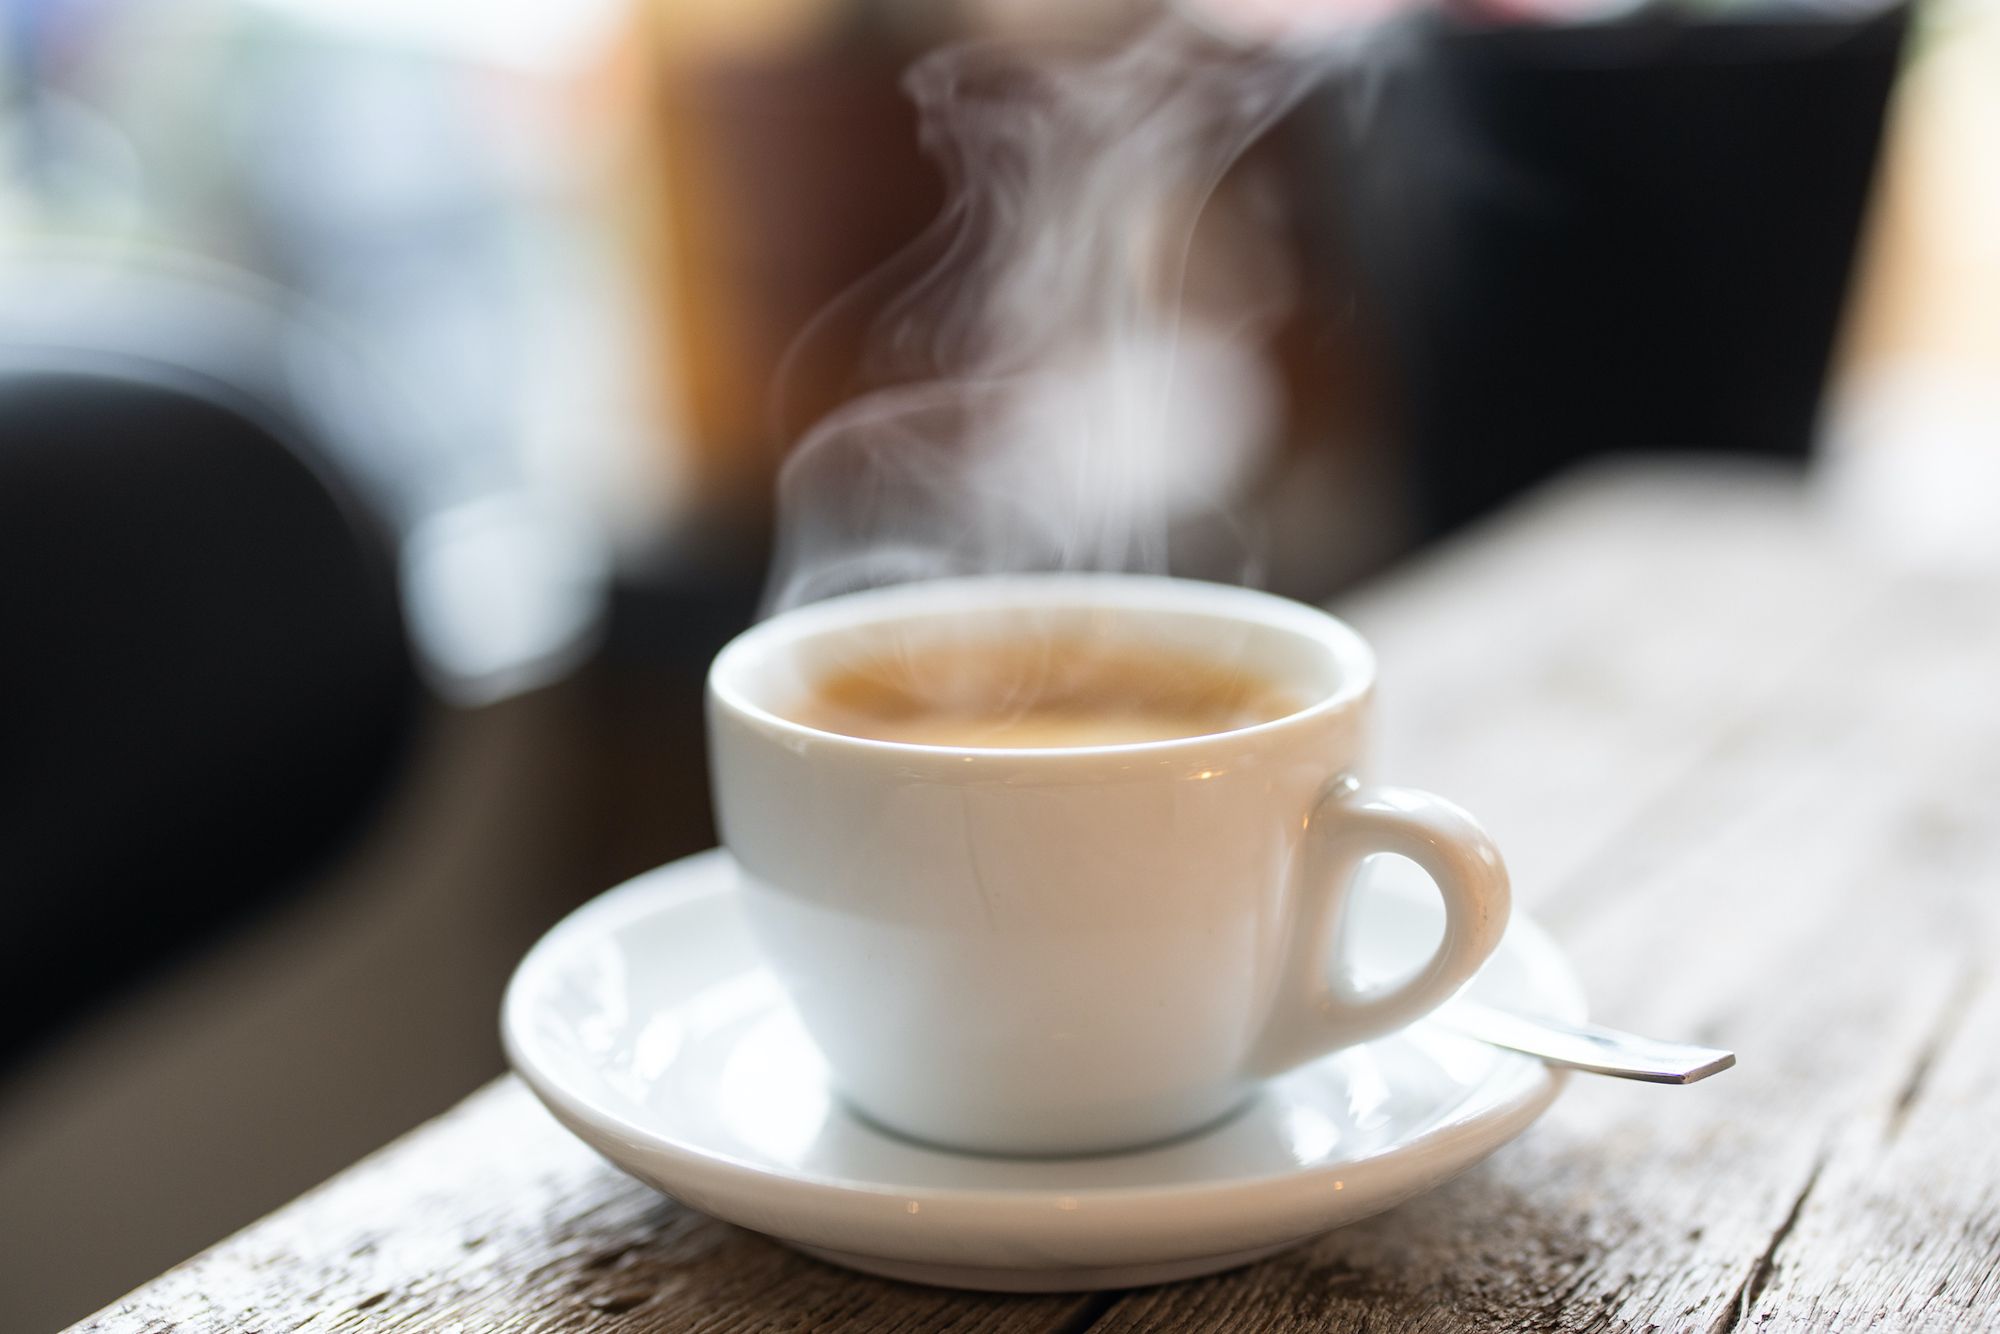 Adiós a las cafeteras Nespresso: está máquina convierte sus cápsulas de café  a un nivel de barista